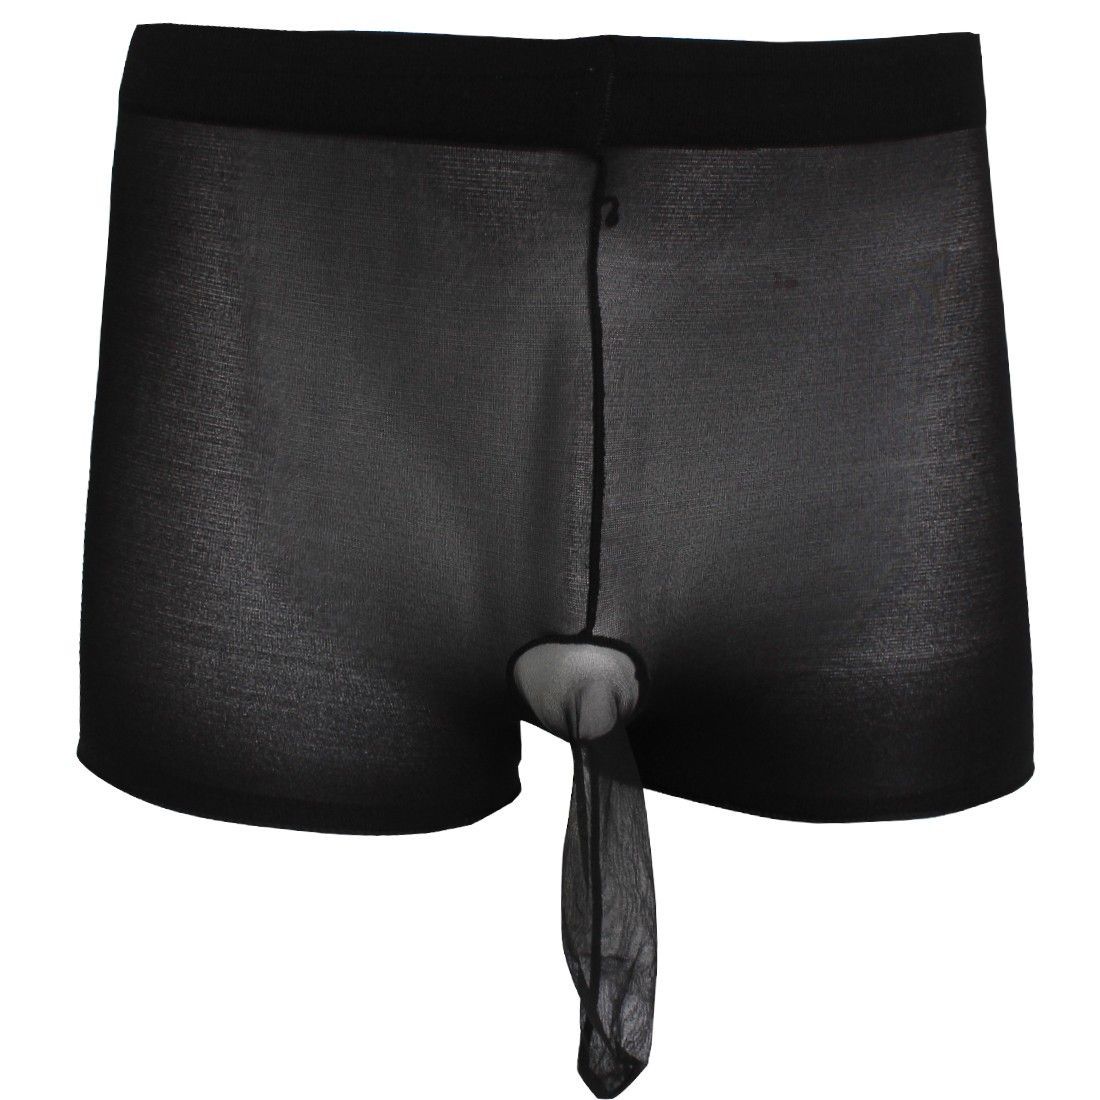 Black Closed Sheath Underwear